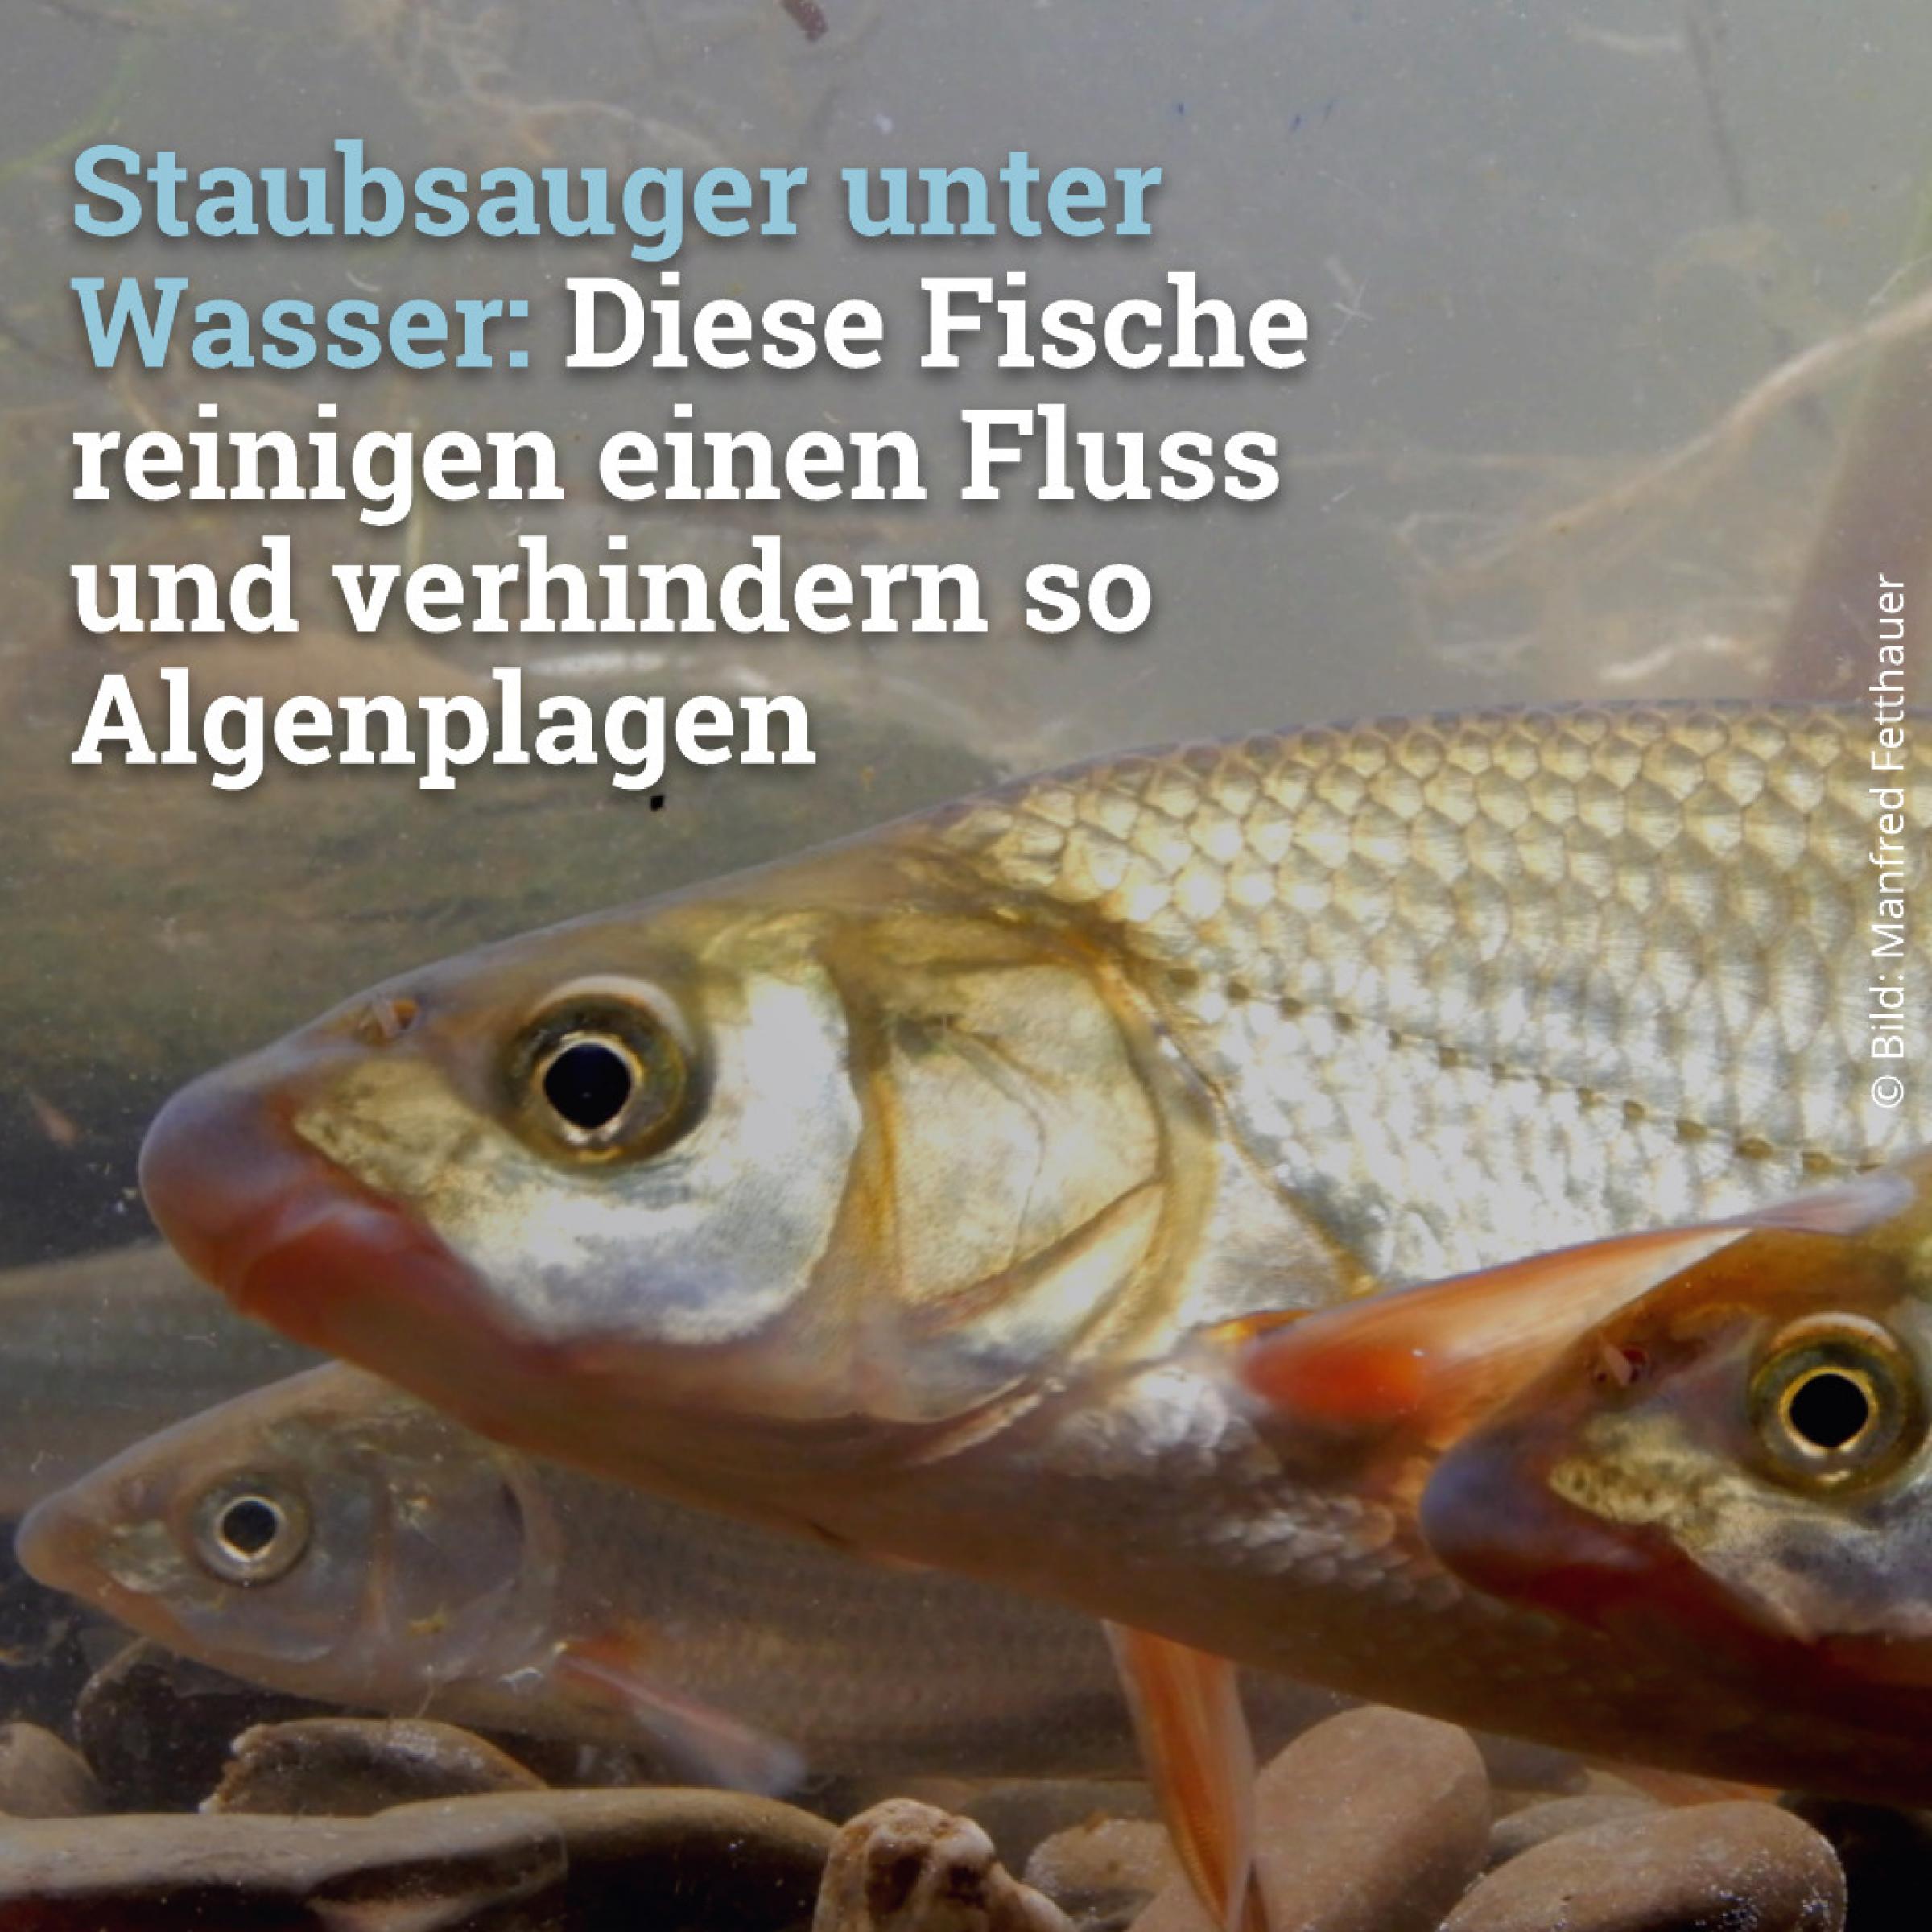 Staubsauger unter Wasser: Diese Fische reinigen einen Fluss  und verhindern so  Algenplagen